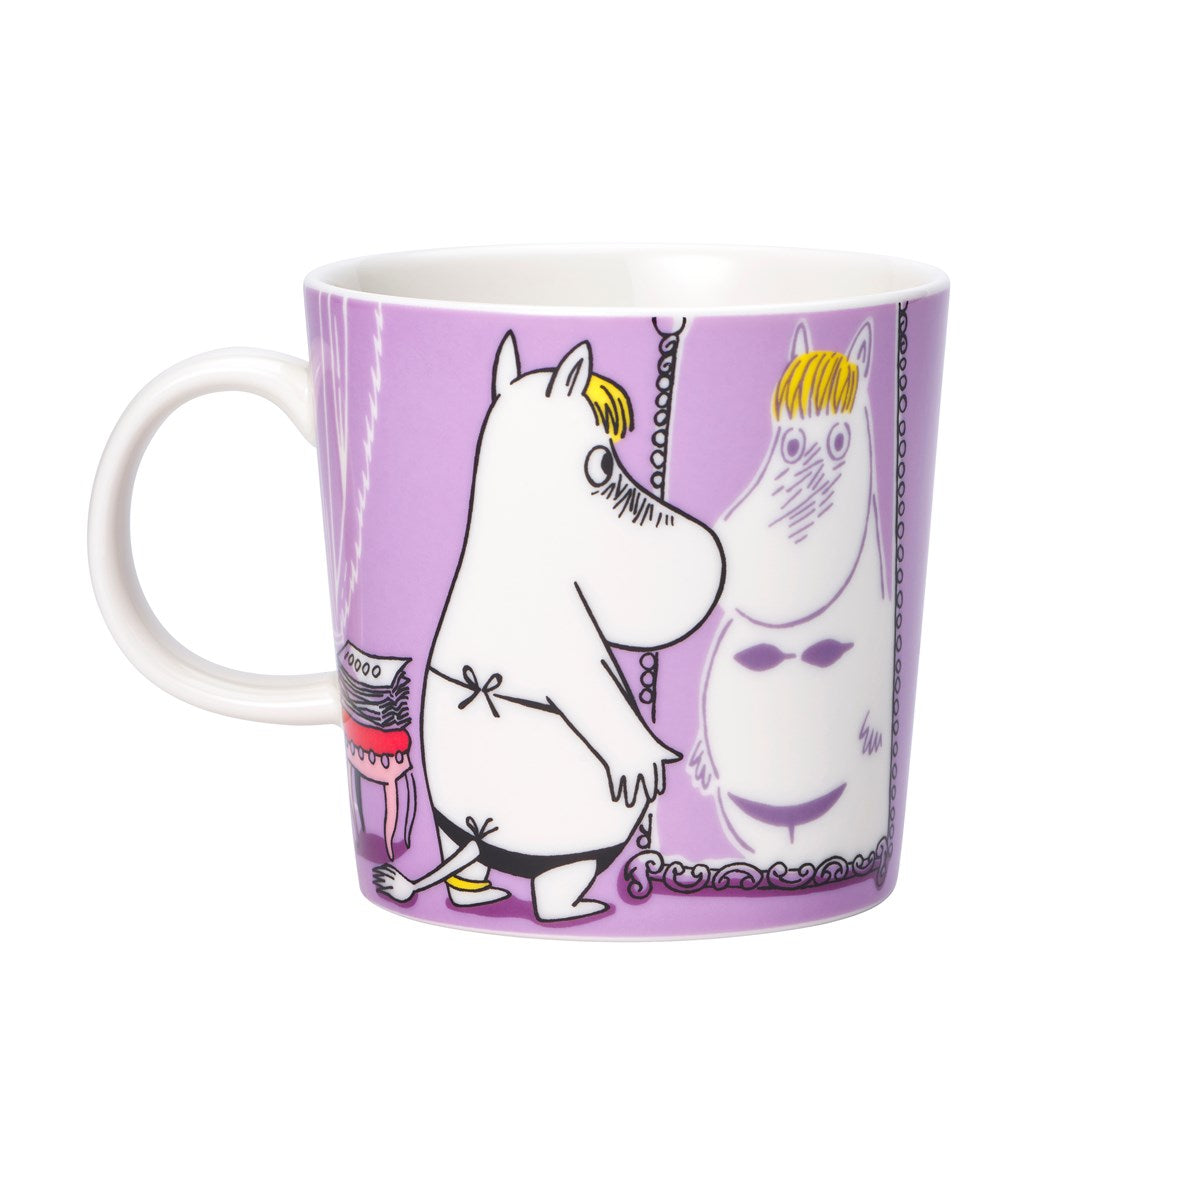 Moomin Arabia / iittala mug 300ml  / 10oz - Snorkmaiden lilac